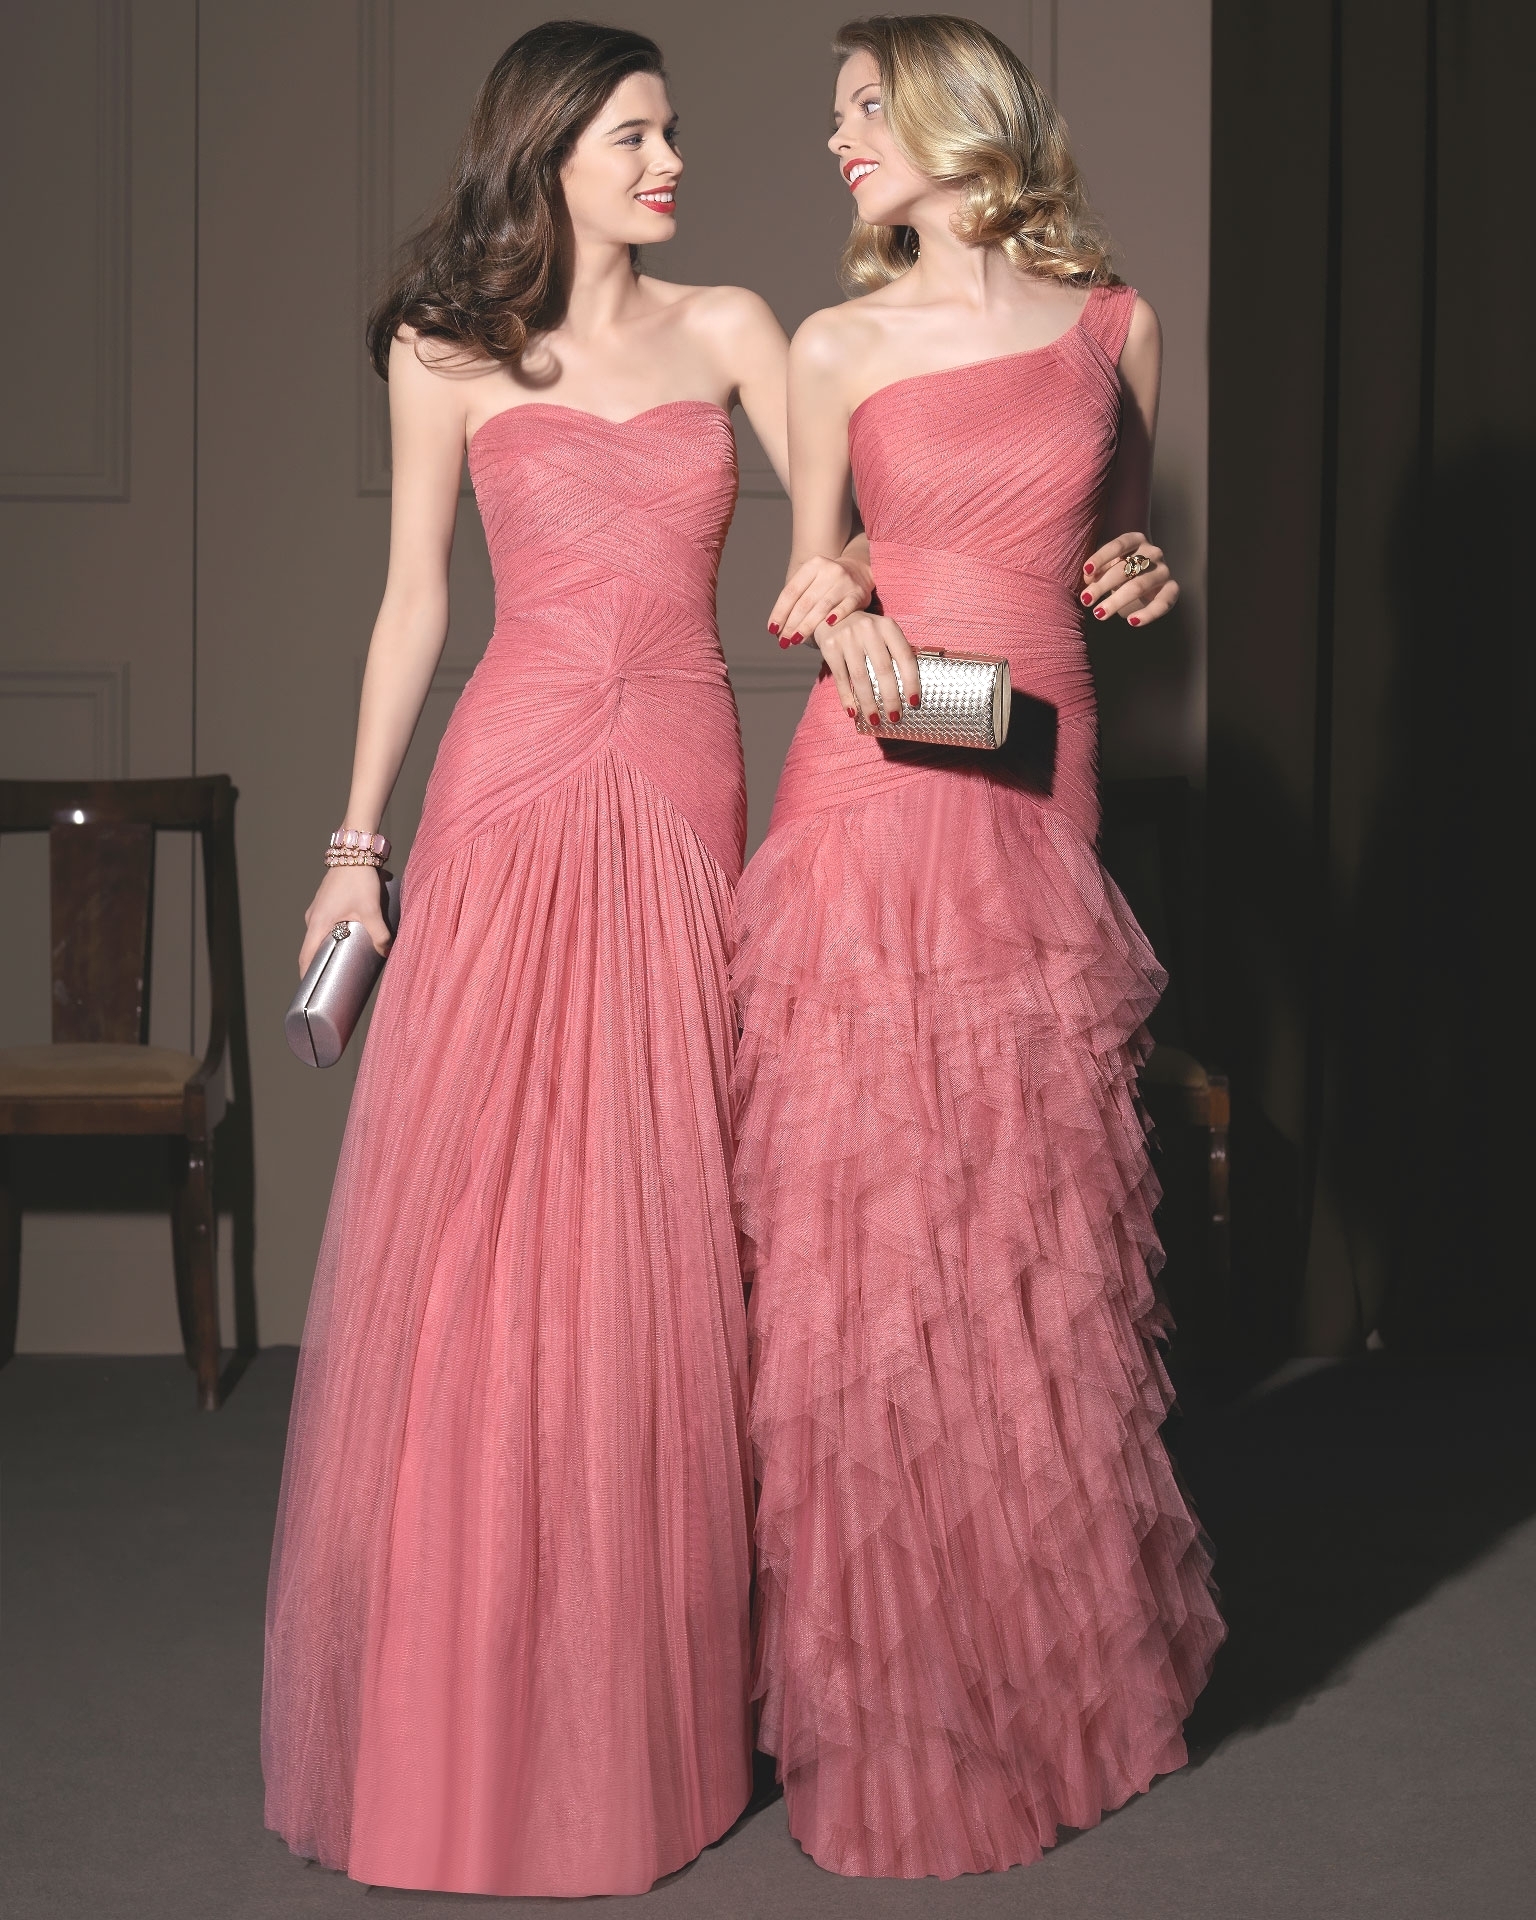 Вечерние платья для настоящих леди или коллекция Aire Barcelona 2014 года, фото № 29